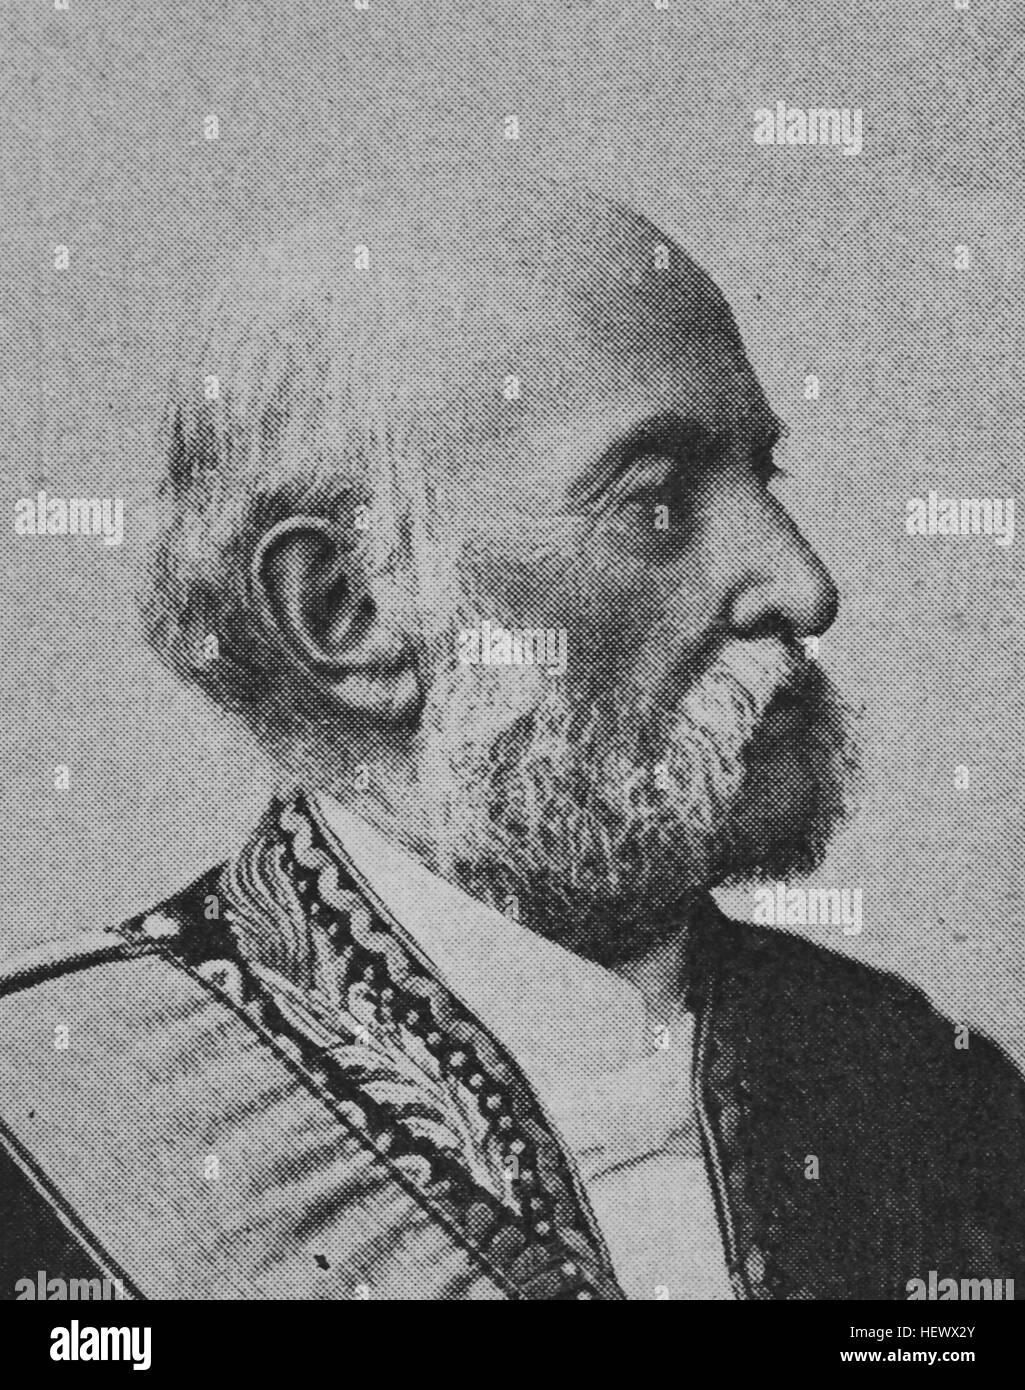 Hermann Freiherr von Mittnacht, born 1825, wuerttembergischer states man and politican, picture from 1895, digital improved Stock Photo